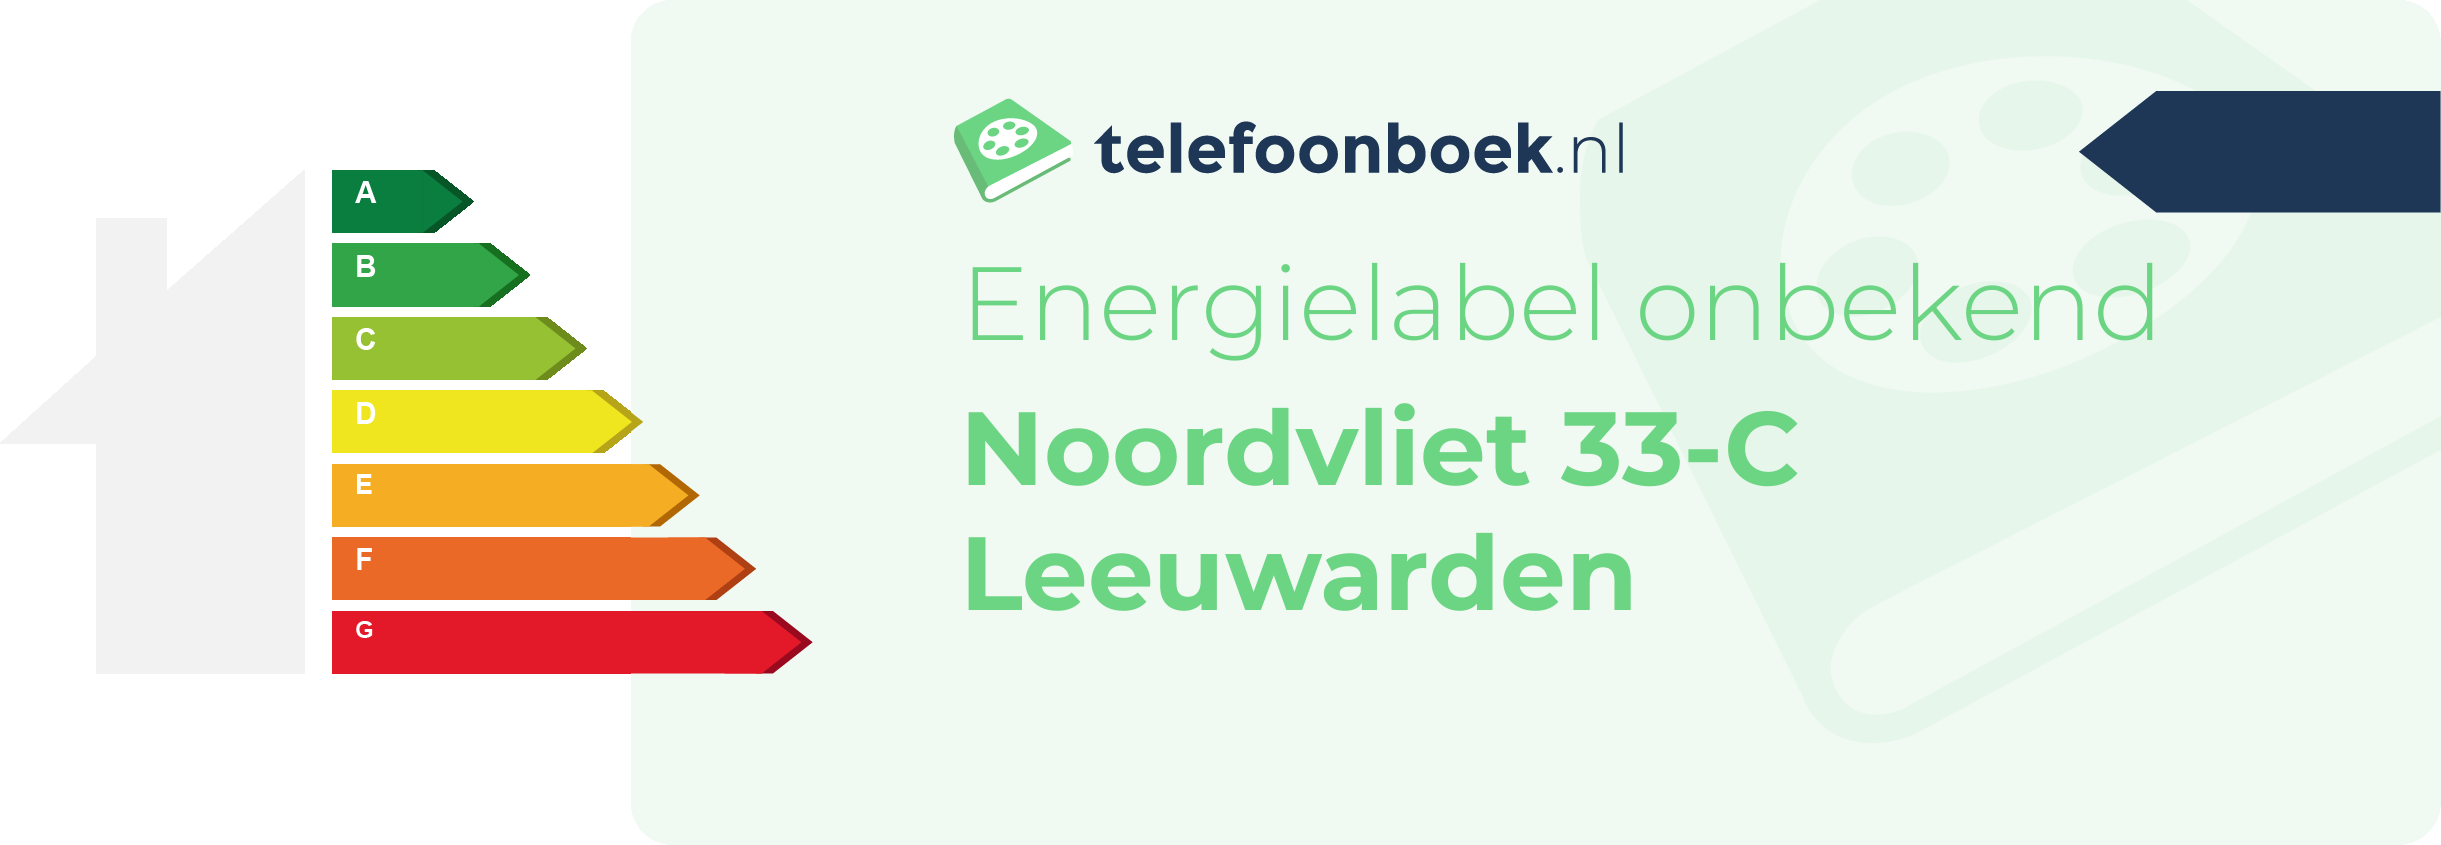 Energielabel Noordvliet 33-C Leeuwarden